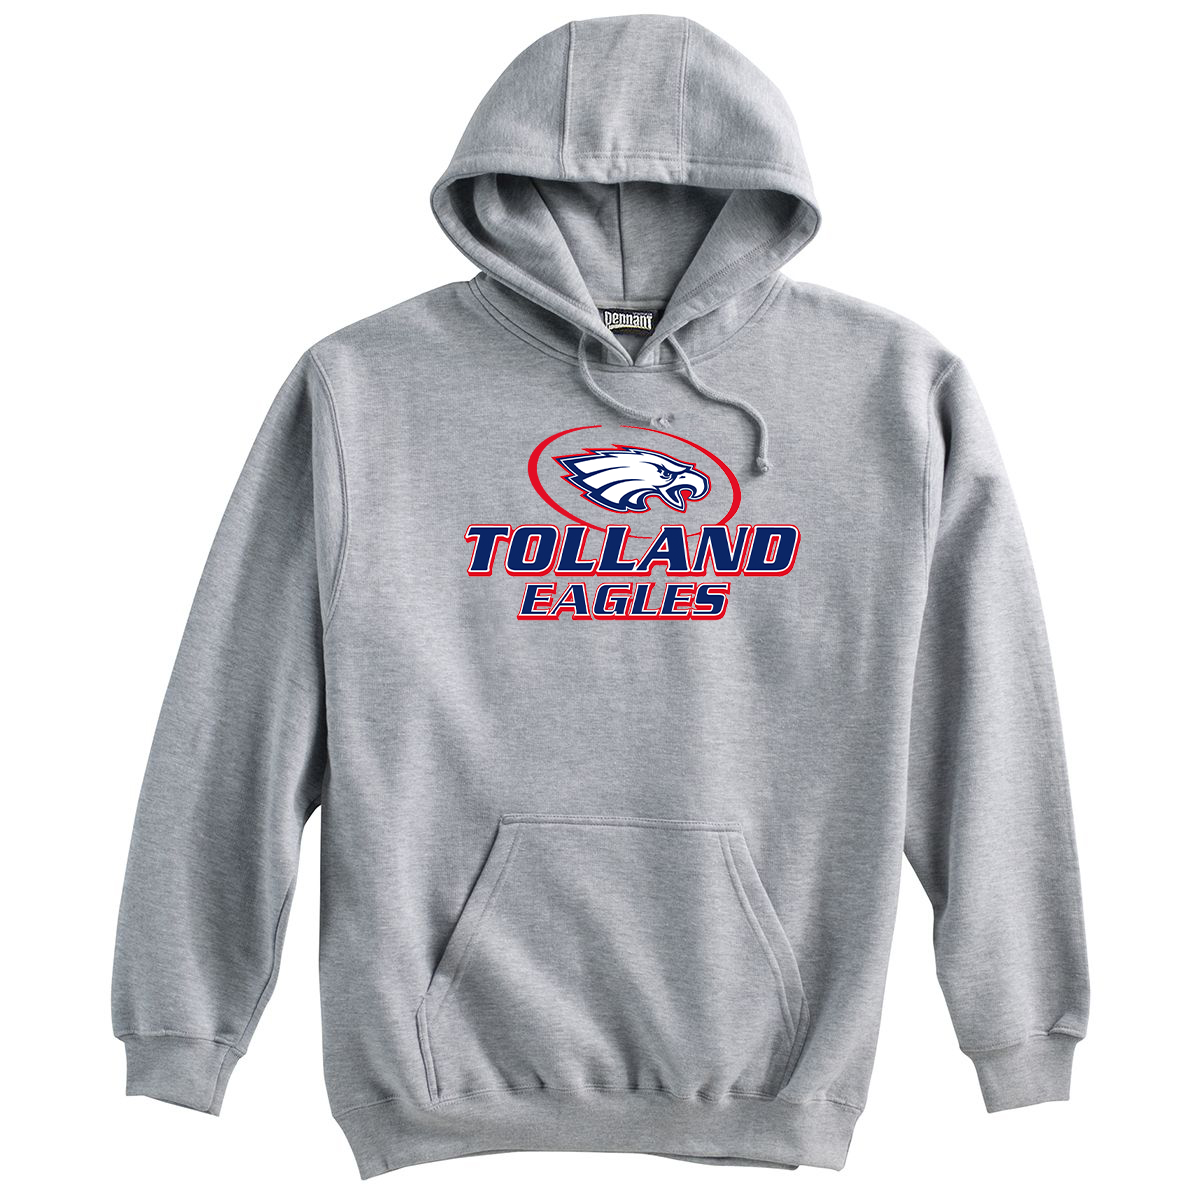 Tolland Football Sweatshirt